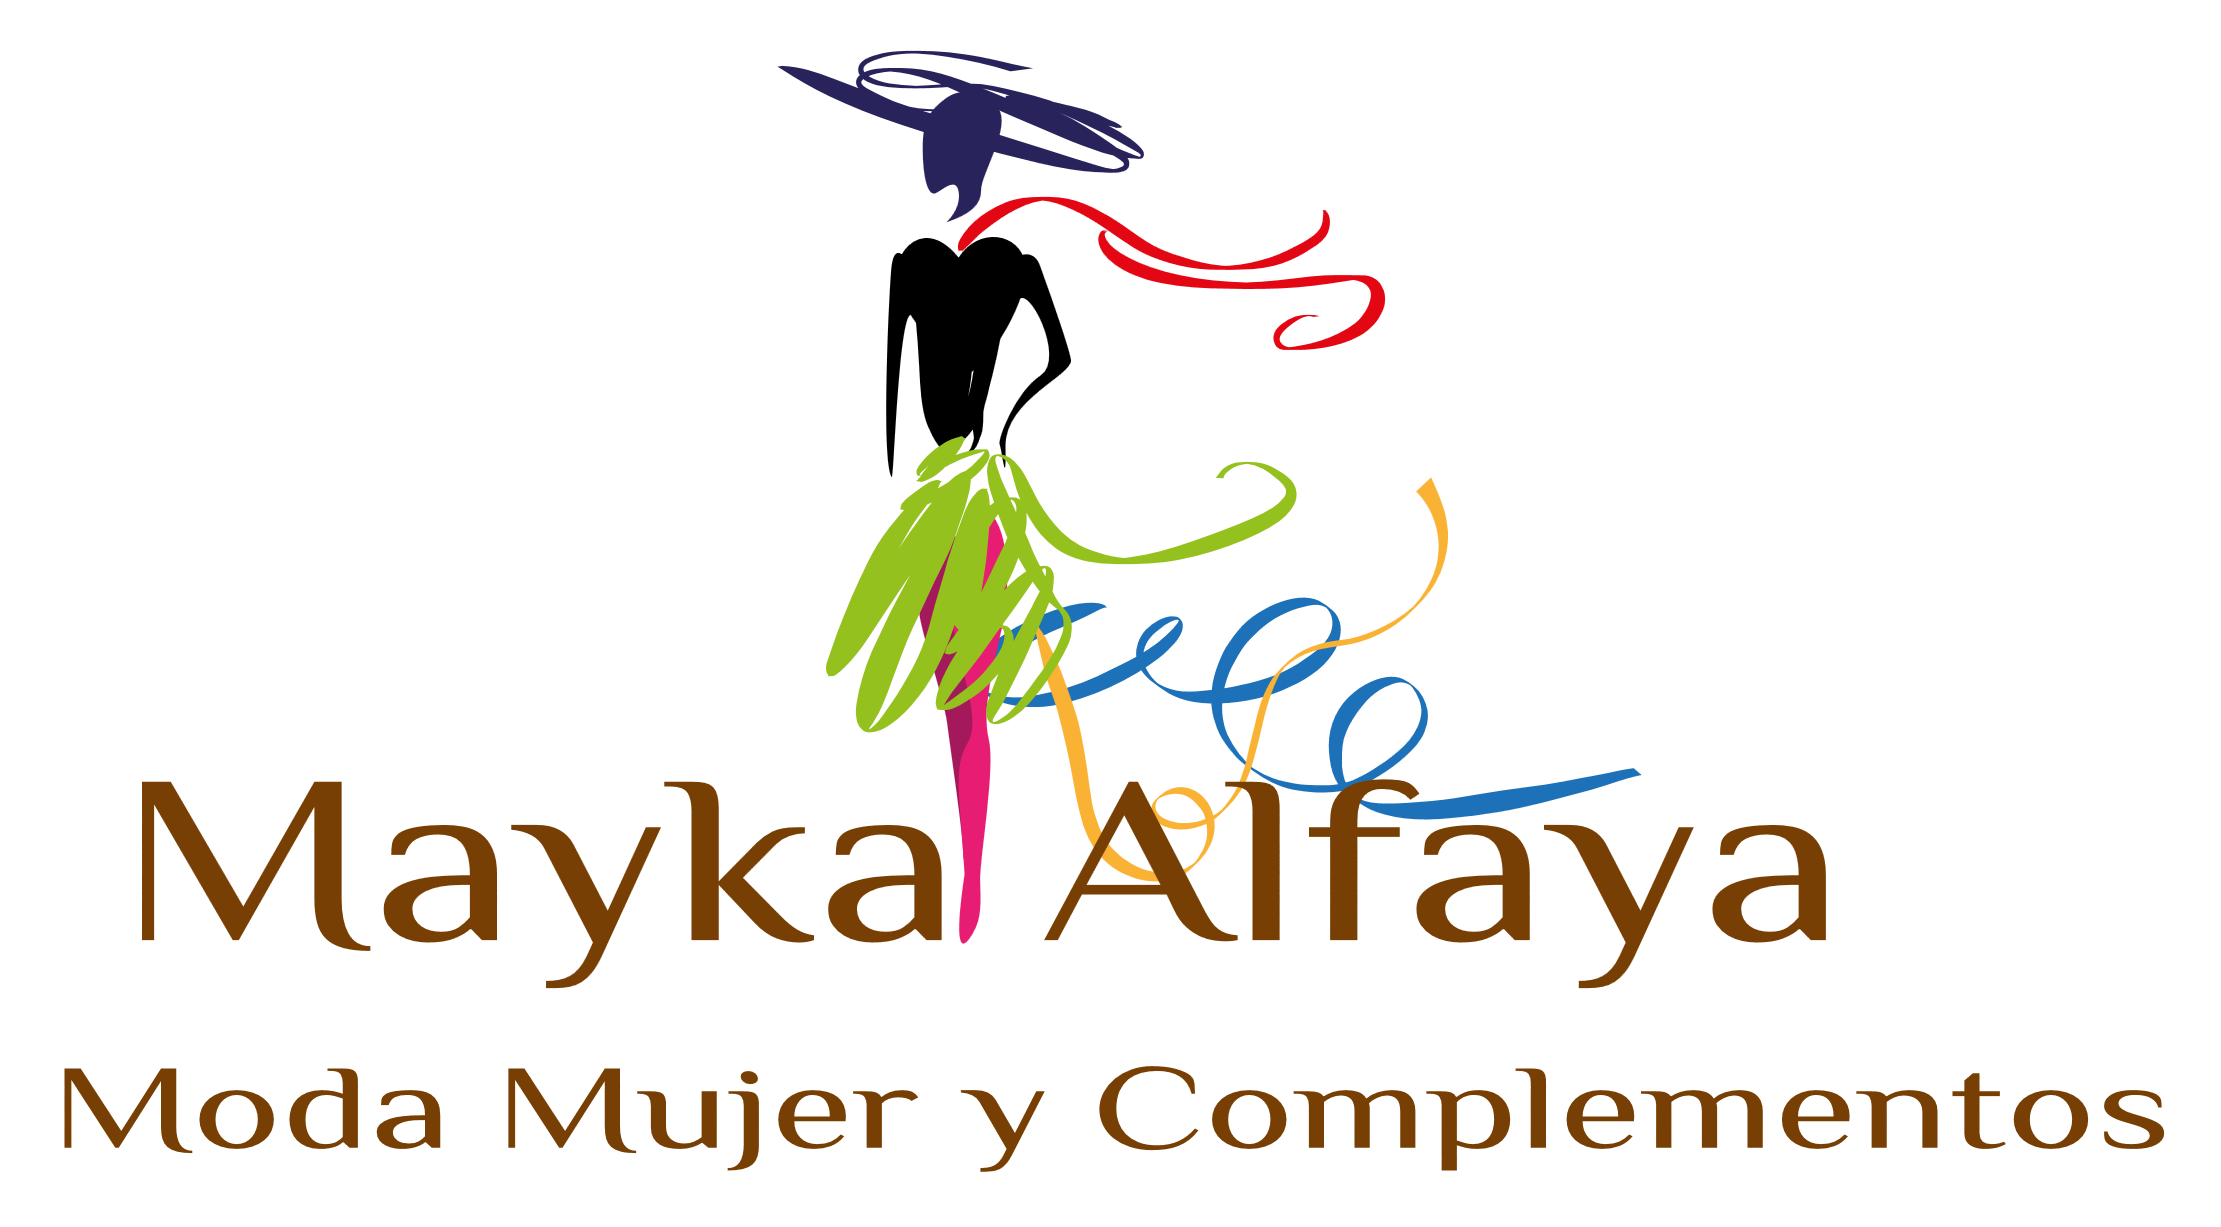 Inauguración de la tienda de moda Mayka Alfaya